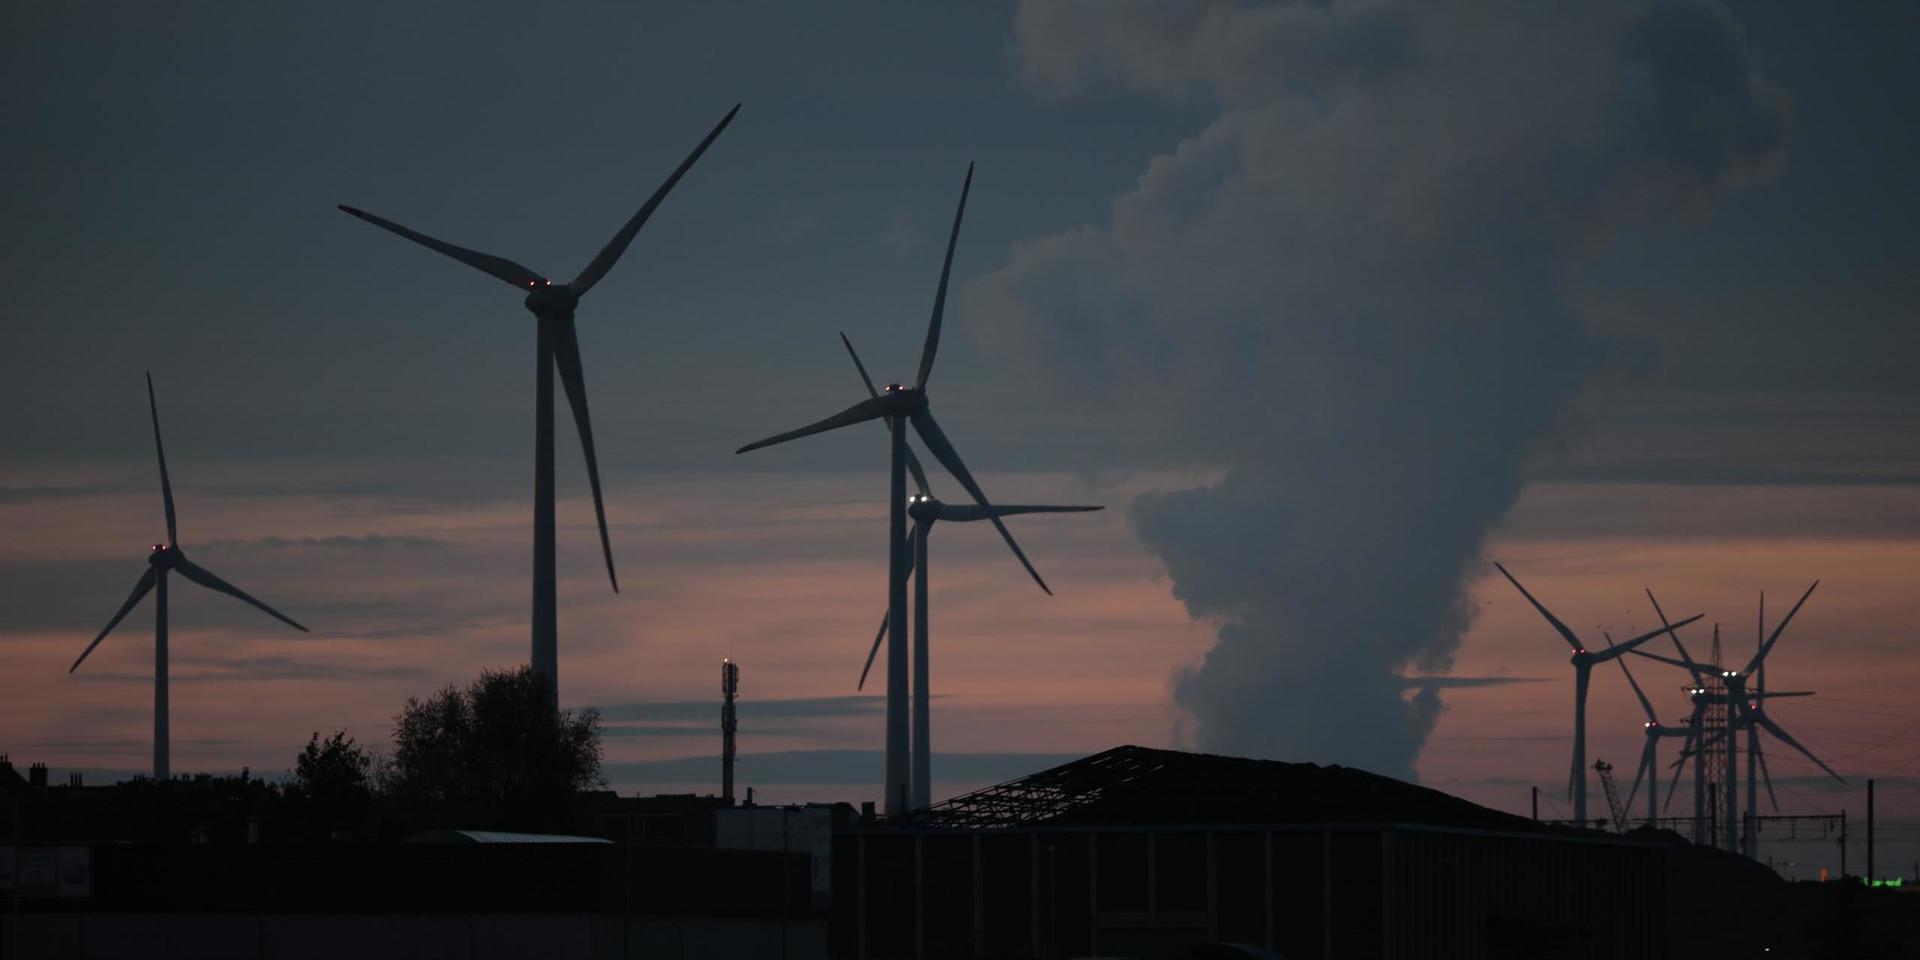  Regeringen behöver göra en översyn hur vindkraftens ekonomiska vinster ska fördelas, skriver debattörerna.